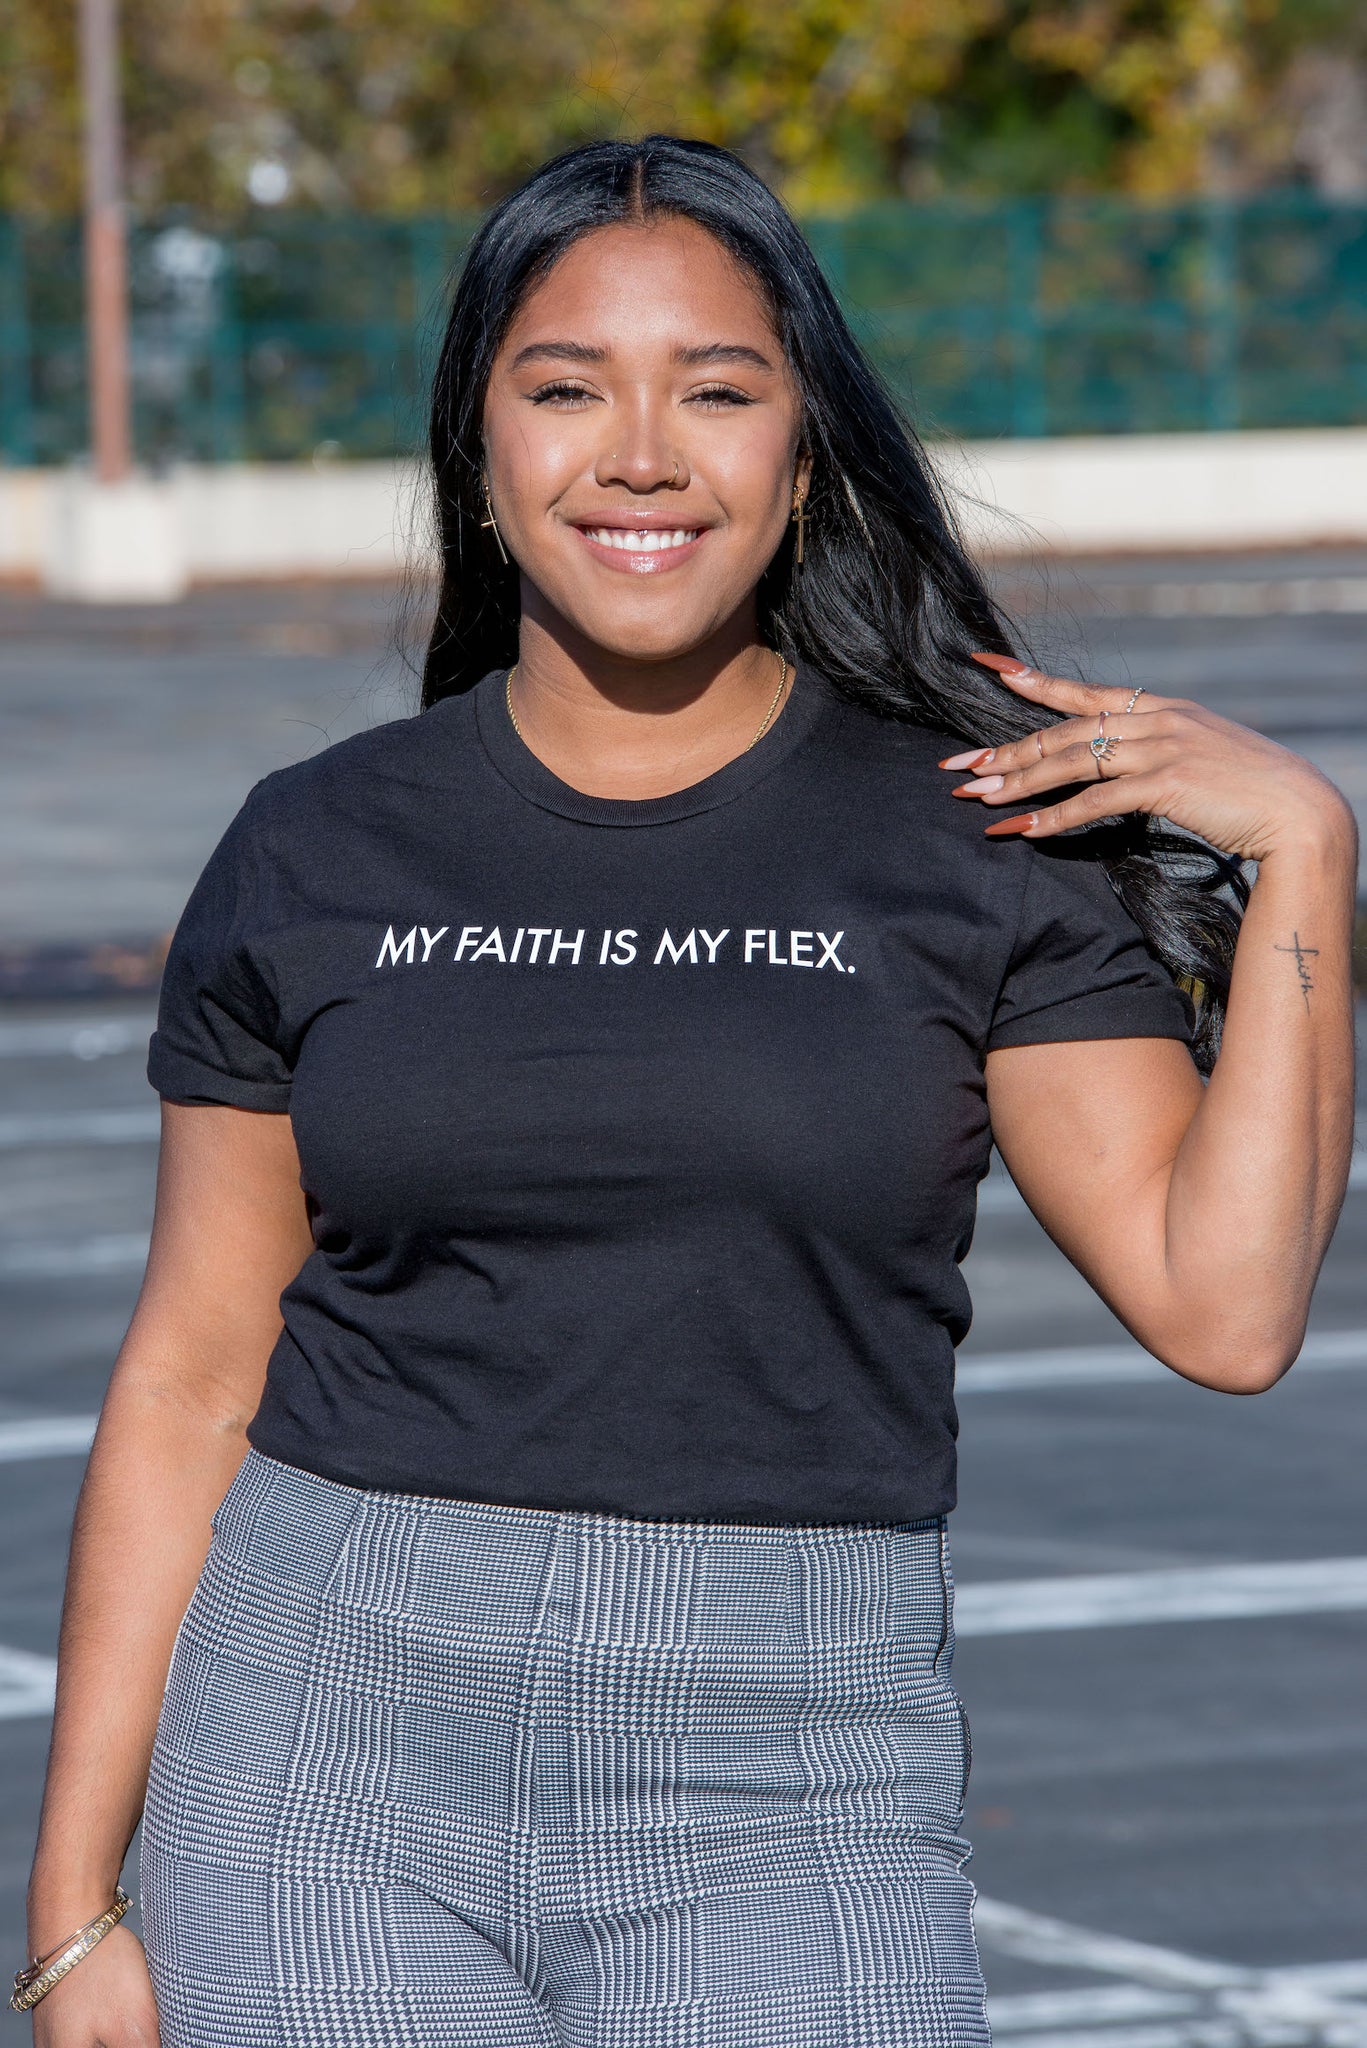 FAITH IS MY FLEX